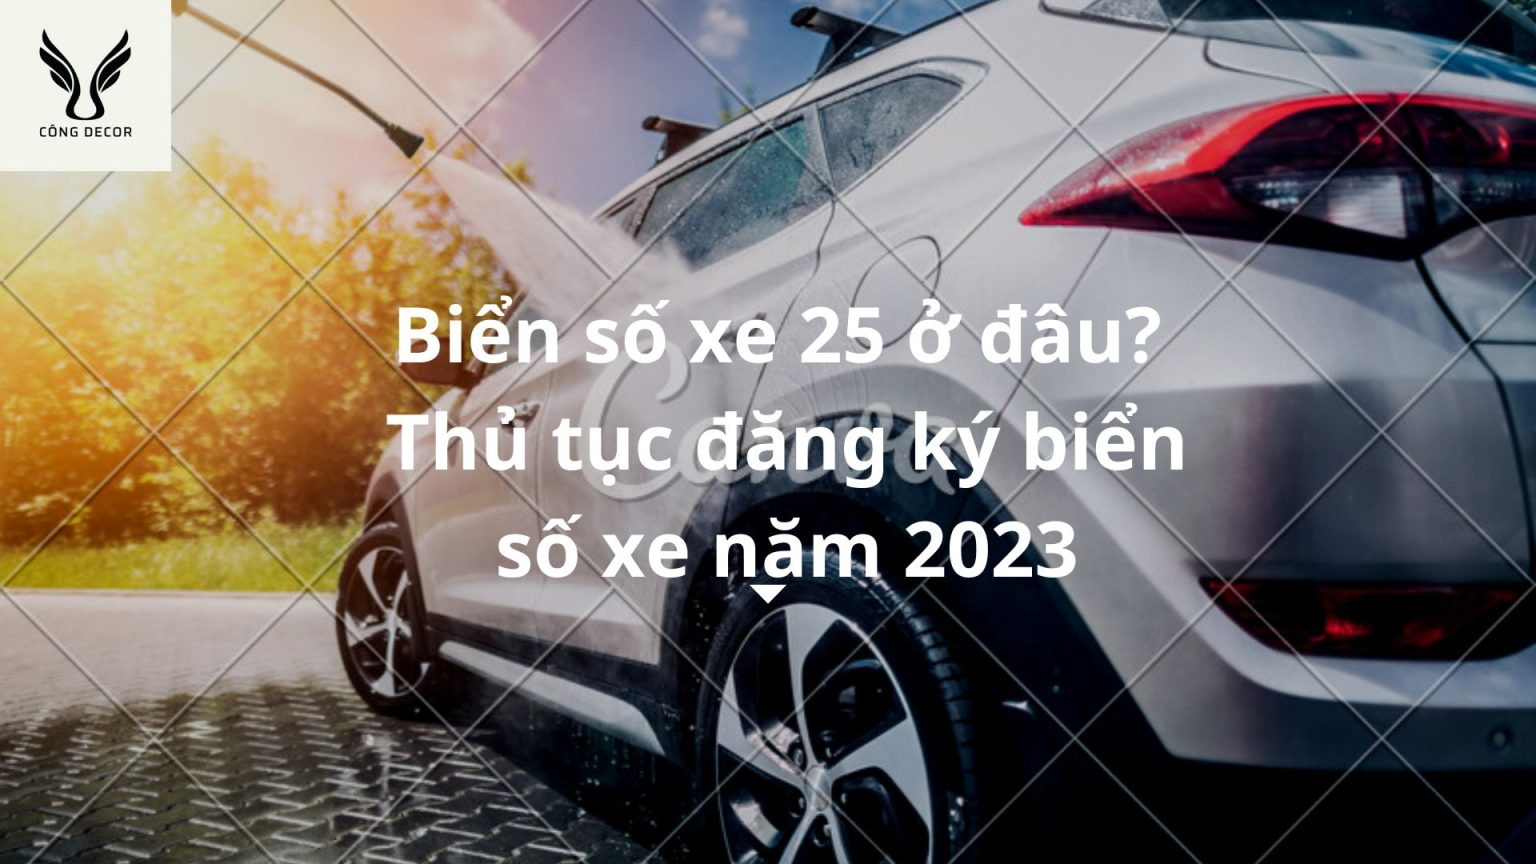 Biển số xe 25 ở đâu? thuộc tỉnh nào? thủ tục đăng ký biển số xe Lai Châu năm 2023